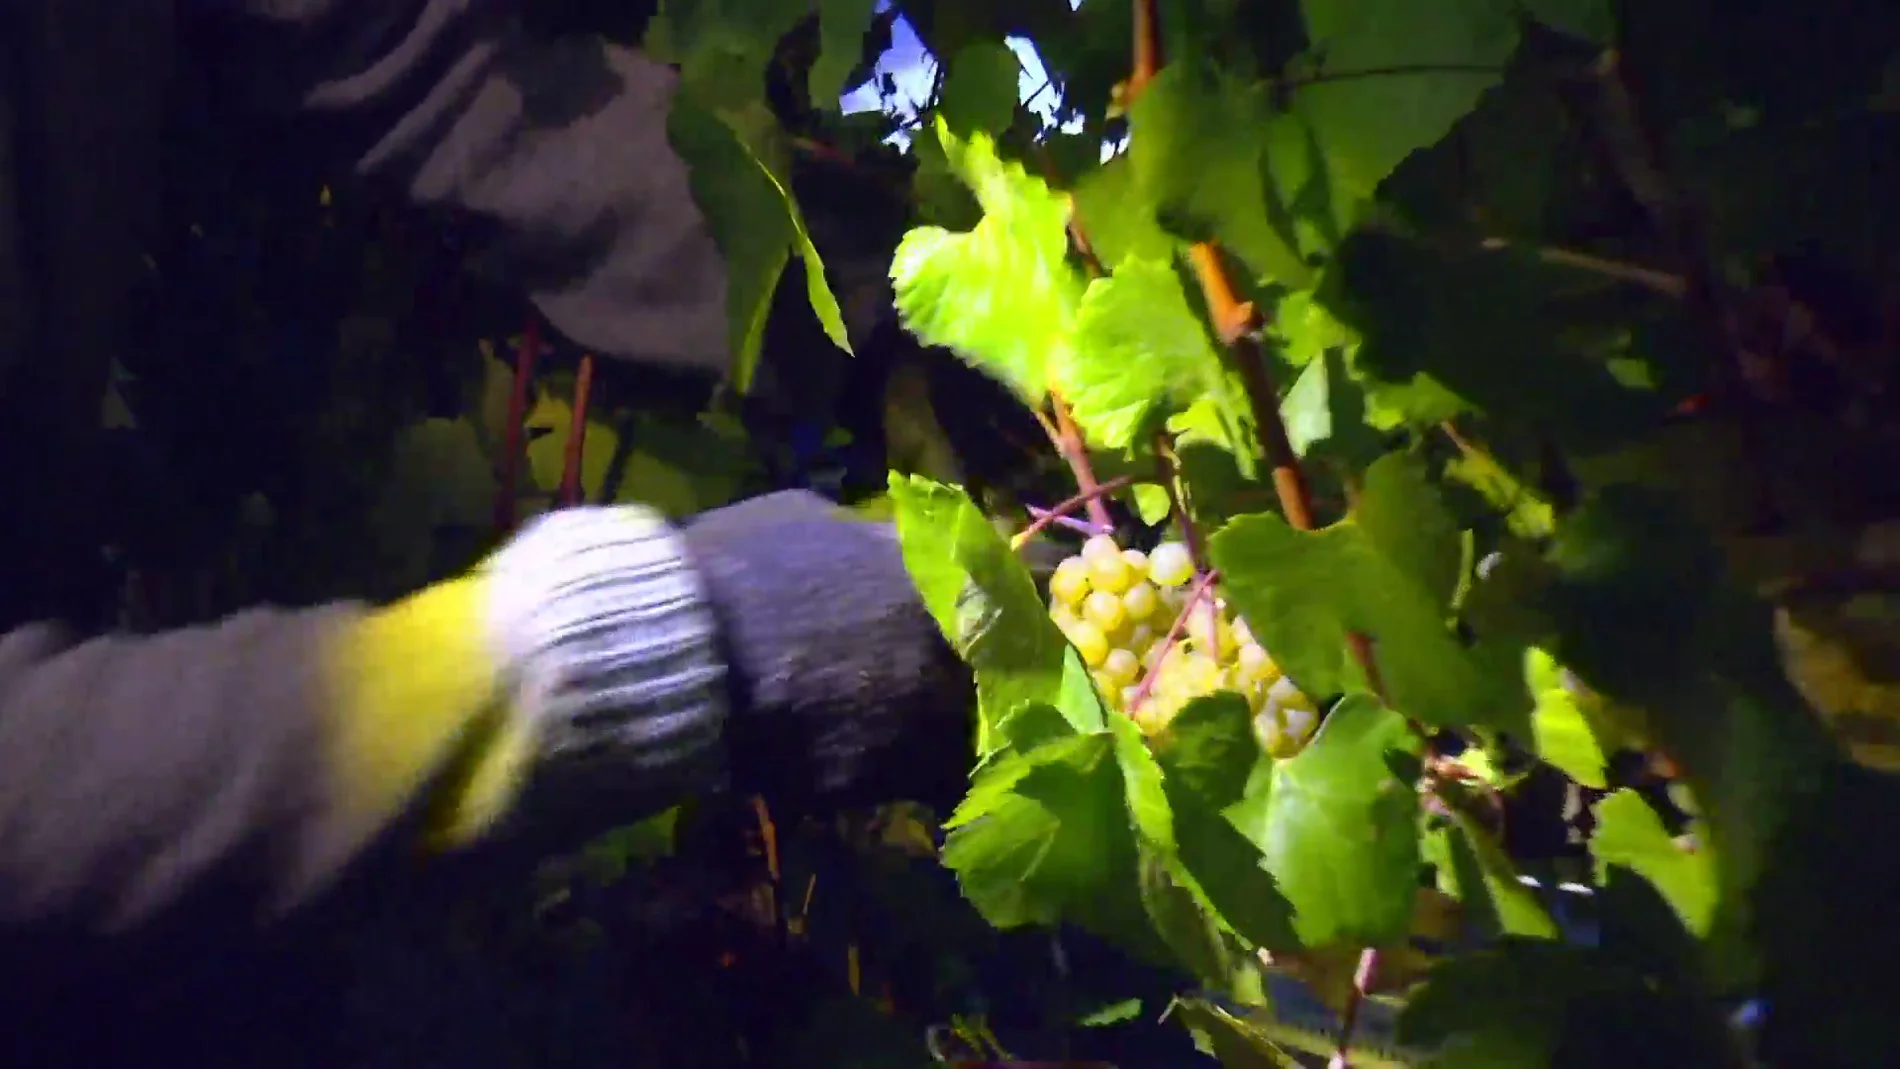 Así trabajan los vendimiadores nocturnos, preservando la calidad de la uva al evitar altas temperaturas